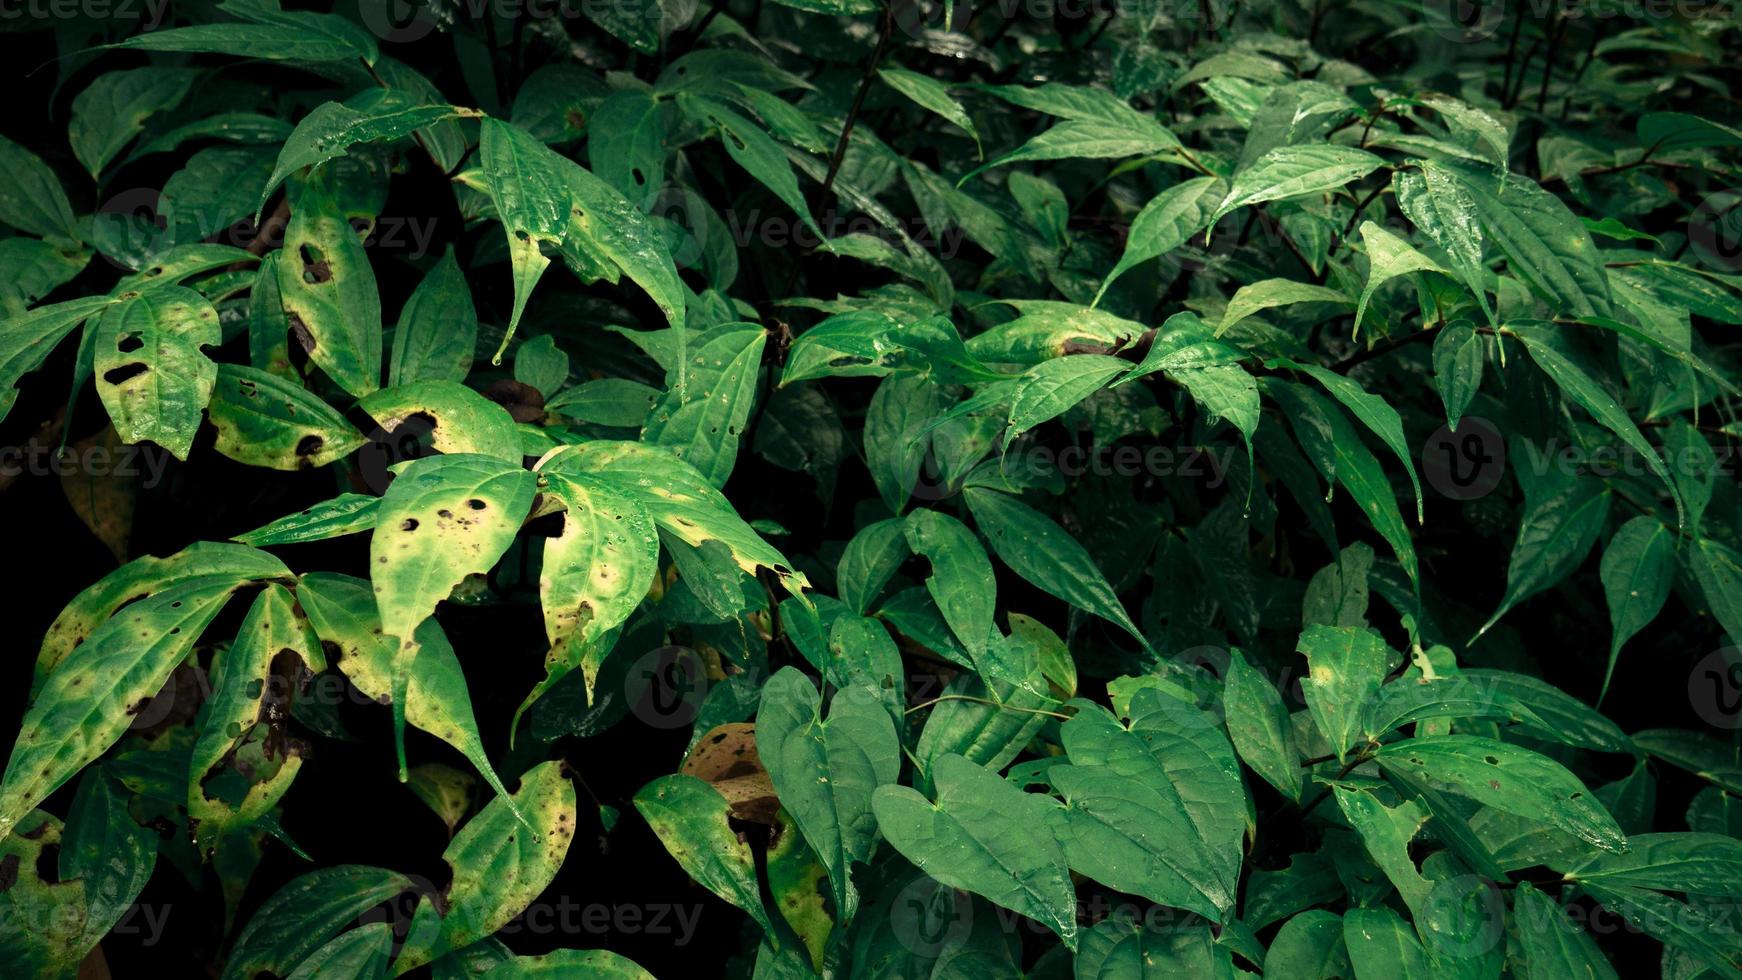 Grün Blatt Hintergrund mit Textur und hoch Kontras Beleuchtung. das Foto ist geeignet zu verwenden zum Natur Hintergrund und botanisch Inhalt Medien.